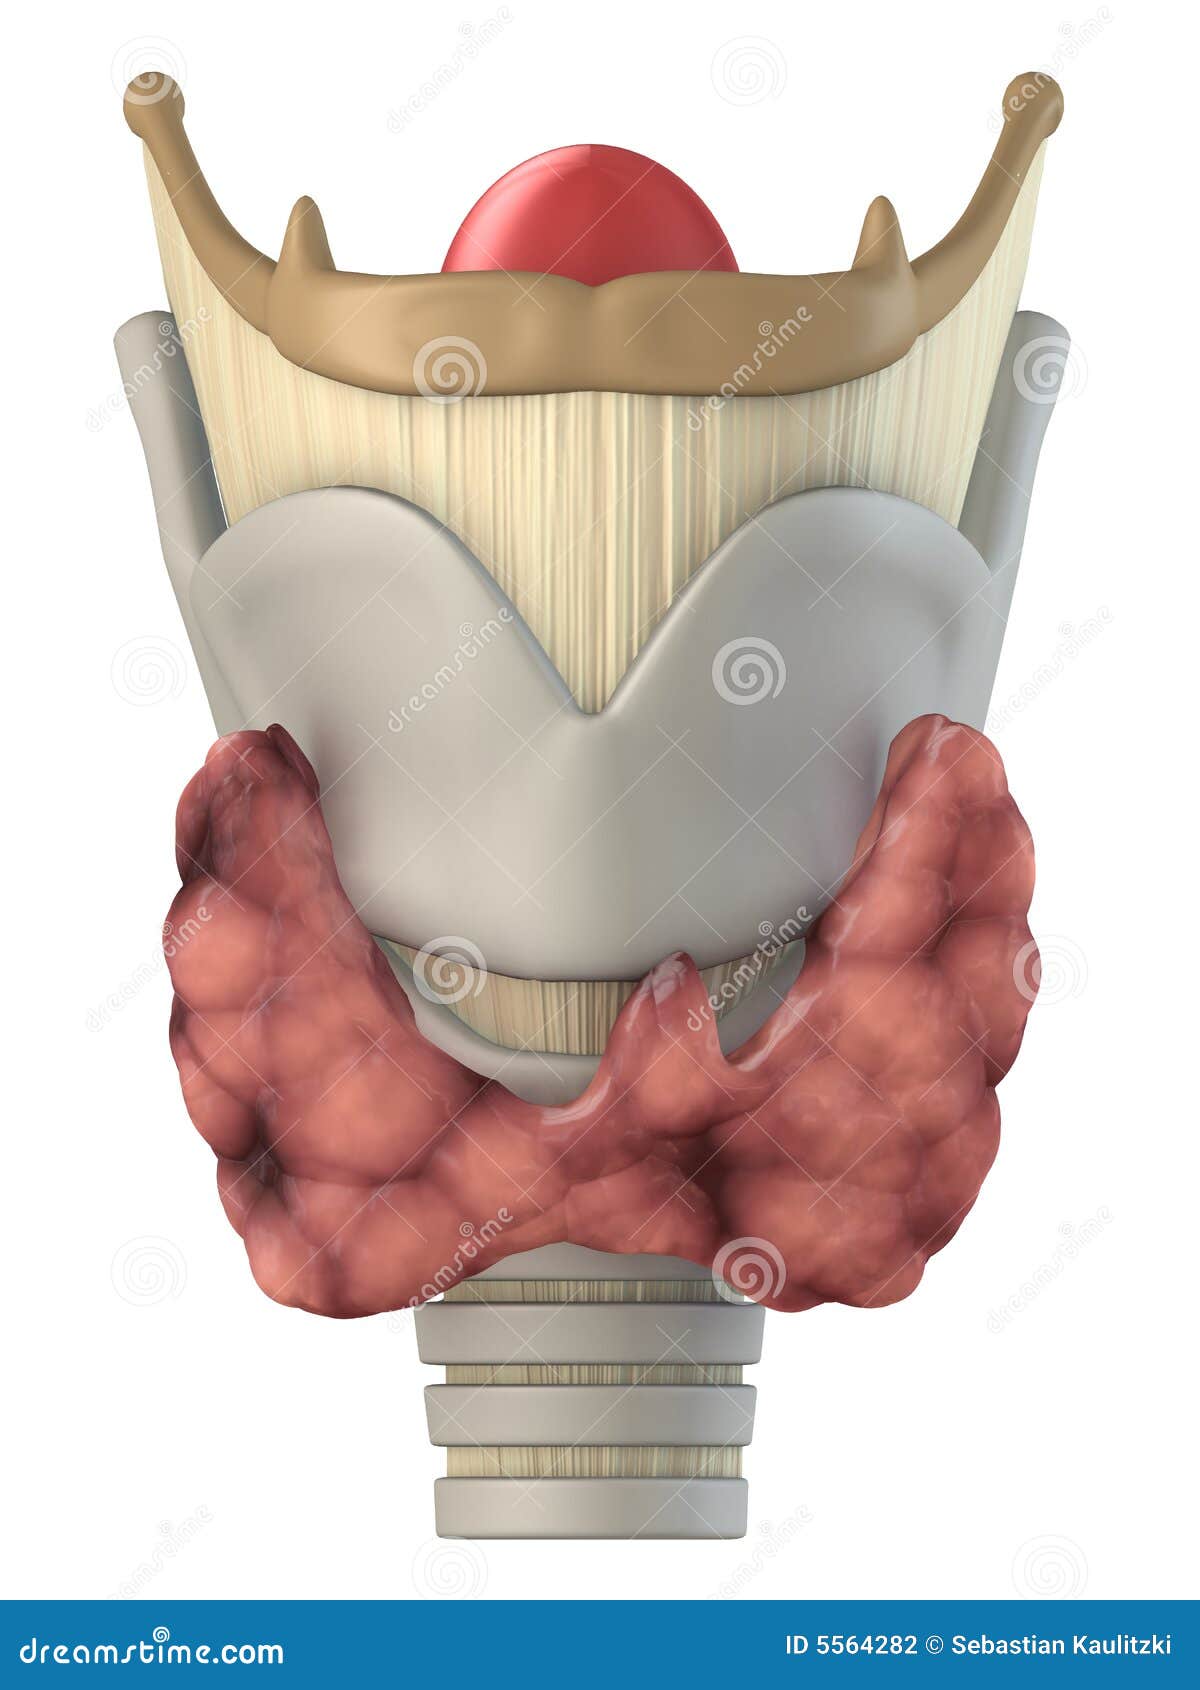 larynx anatomy